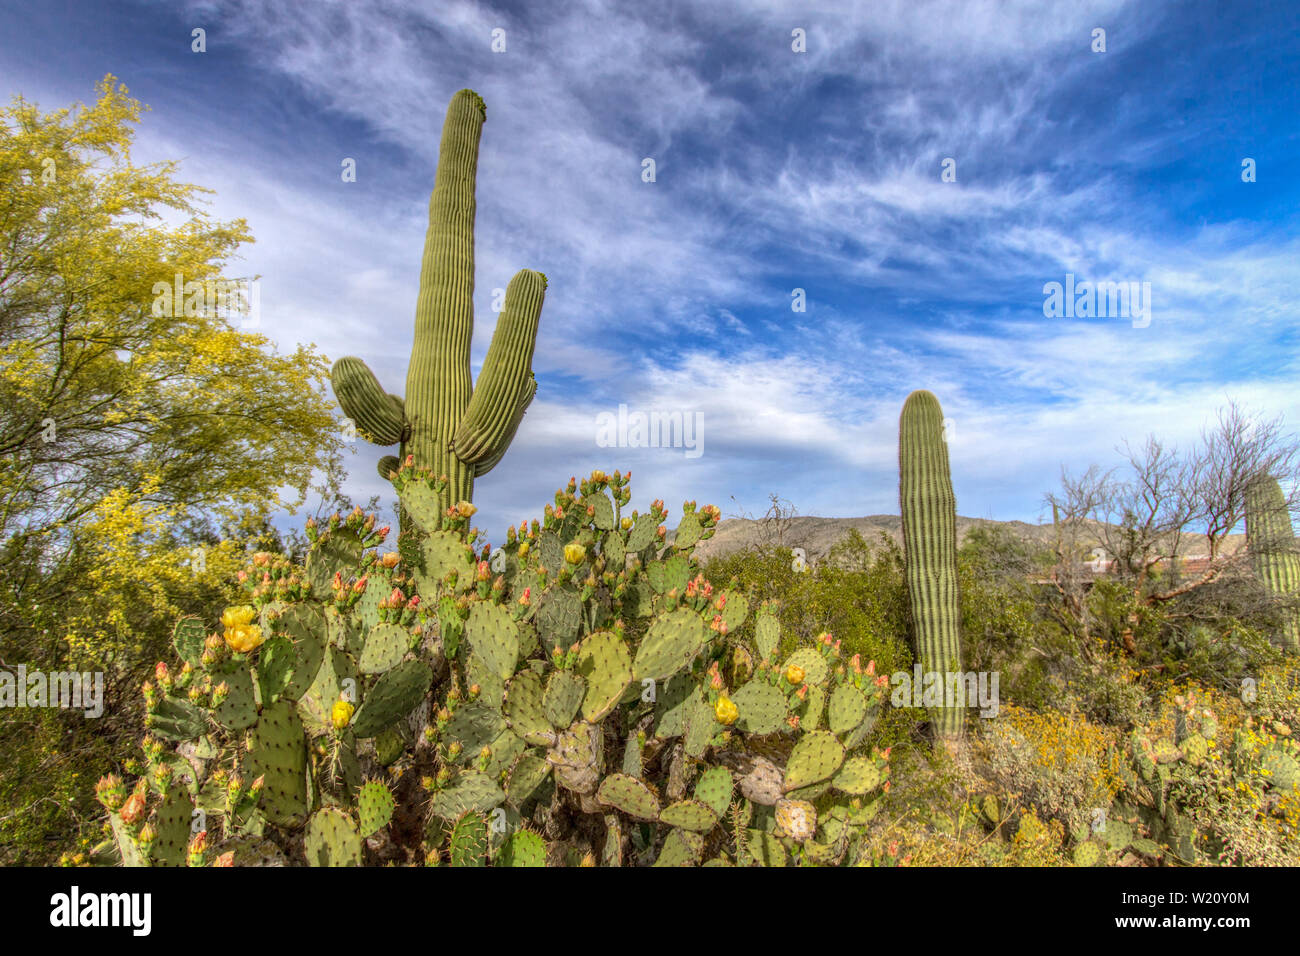 Desierto Paisaje de flores silvestres. Cactus de pera pickly y los poderosos cactus Saguaro florecen bajo un hermoso cielo azul... Parque Nacional Saguaro, Tucson, Arizona Foto de stock